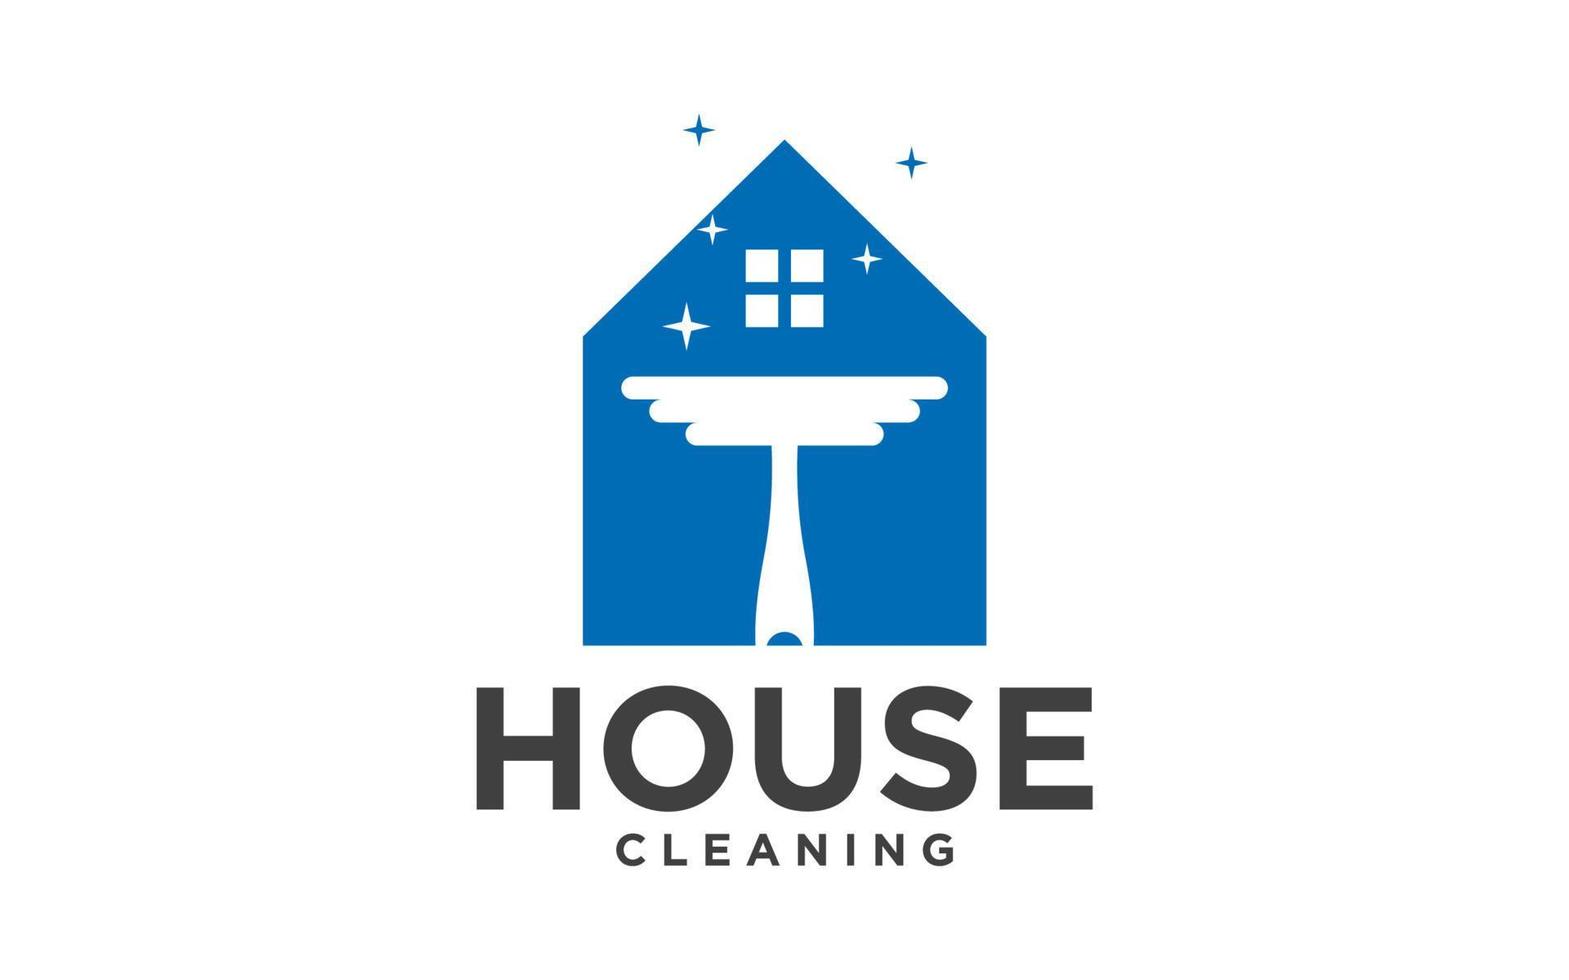 maison bâtiment nettoyage un service entreprise. logo conception modèles vecteur